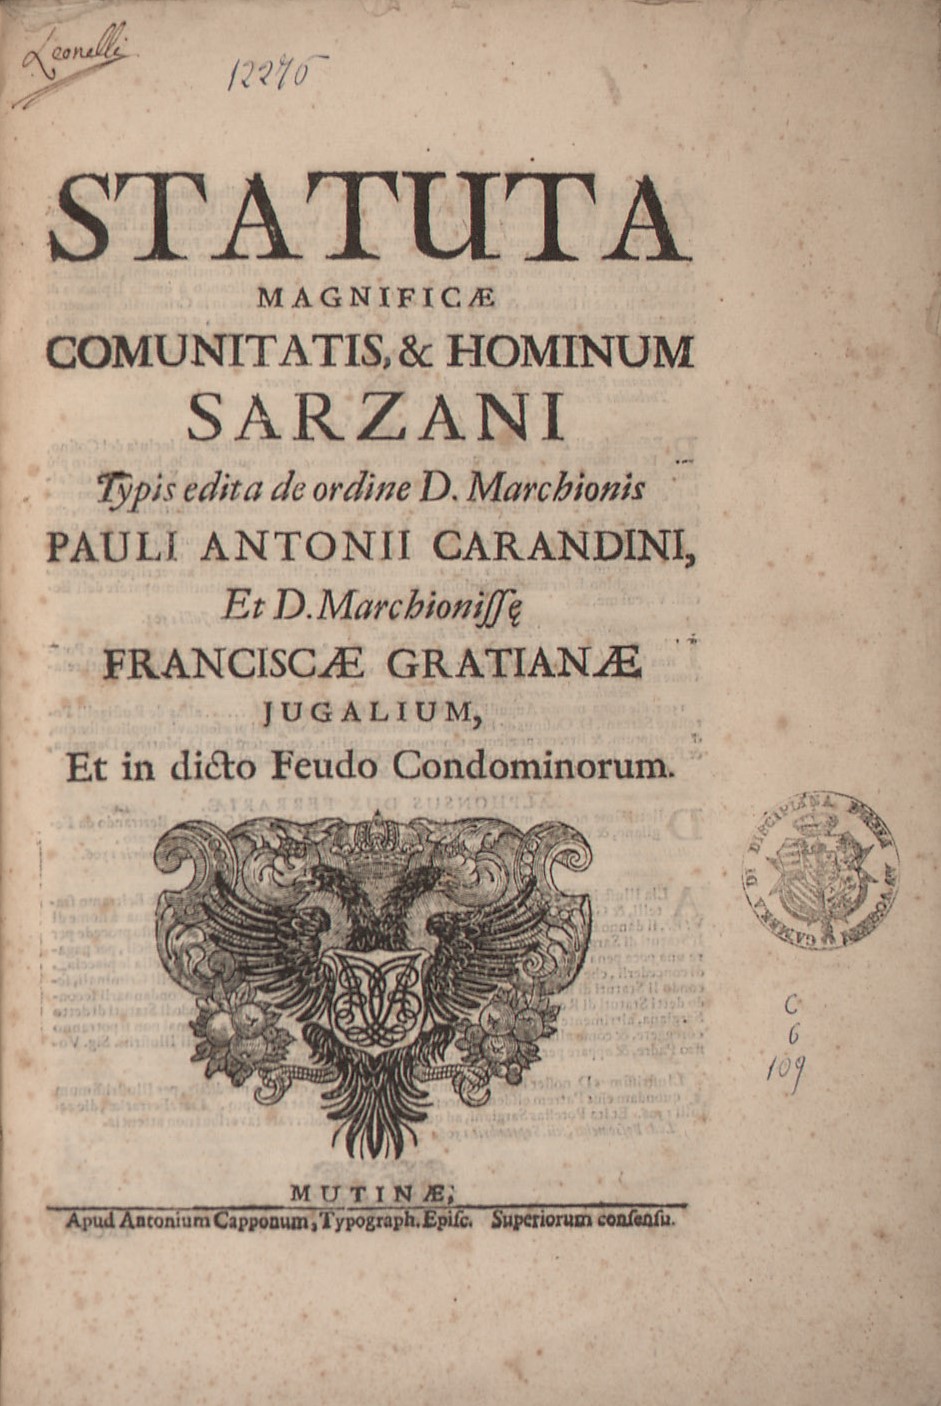 Statuta magnificae comunitatis, & hominum Sarzani 